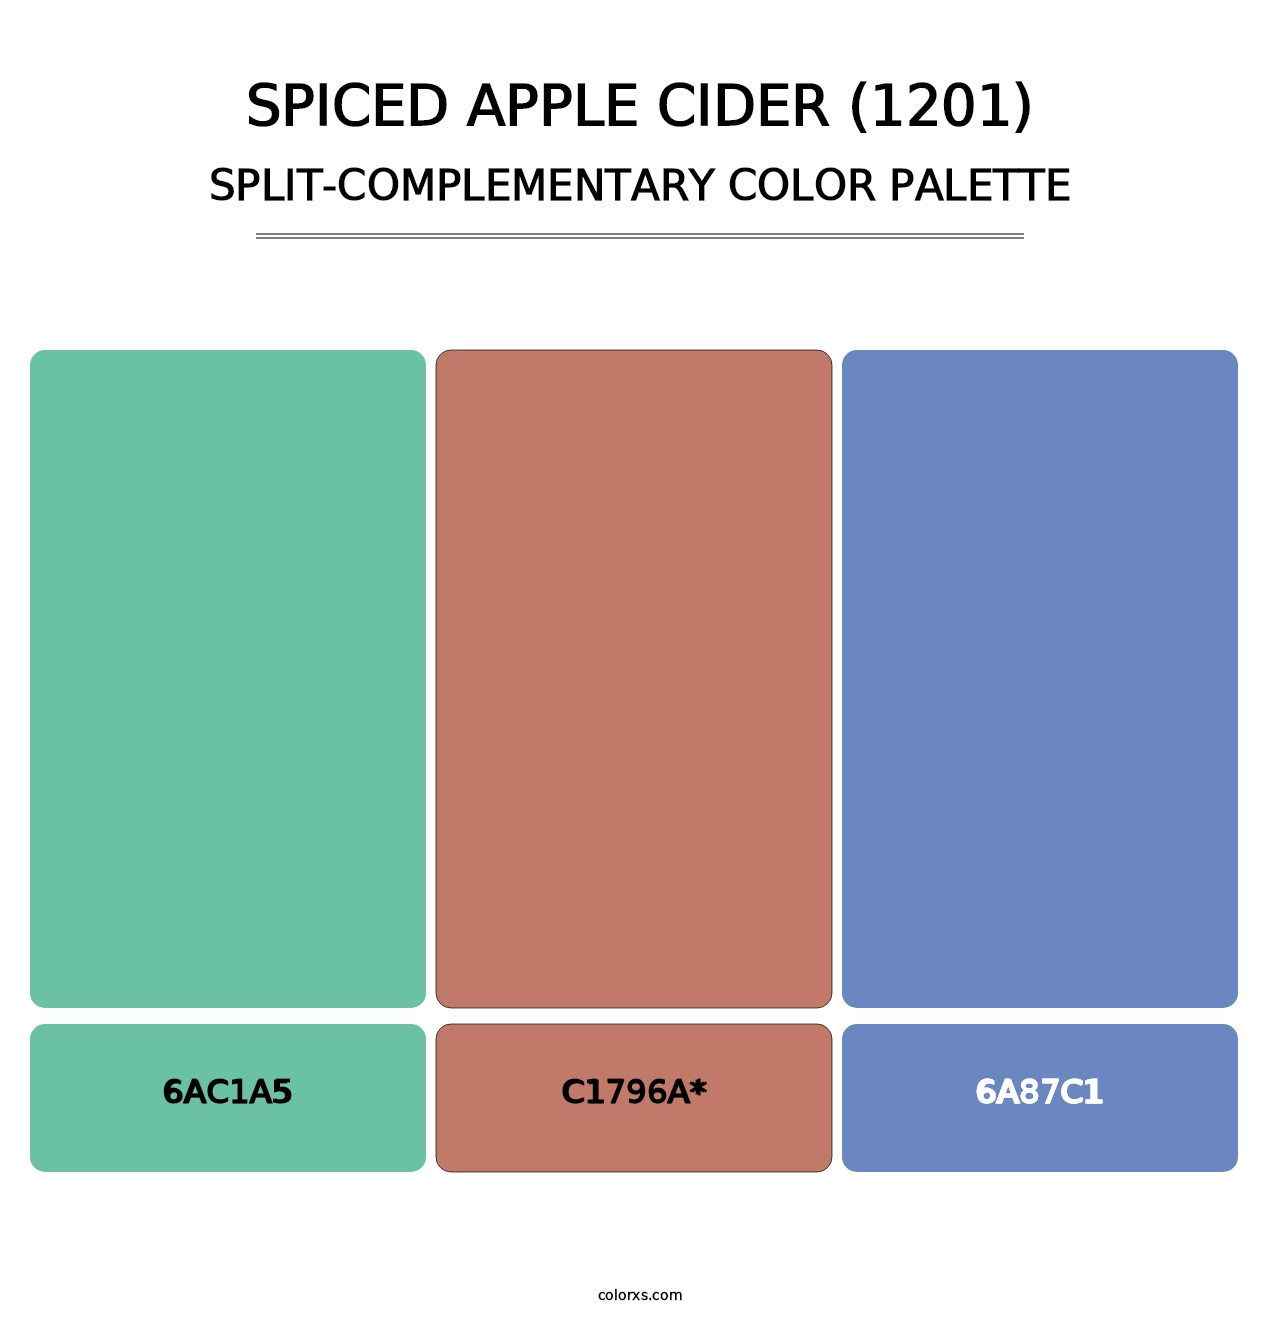 Spiced Apple Cider (1201) - Split-Complementary Color Palette